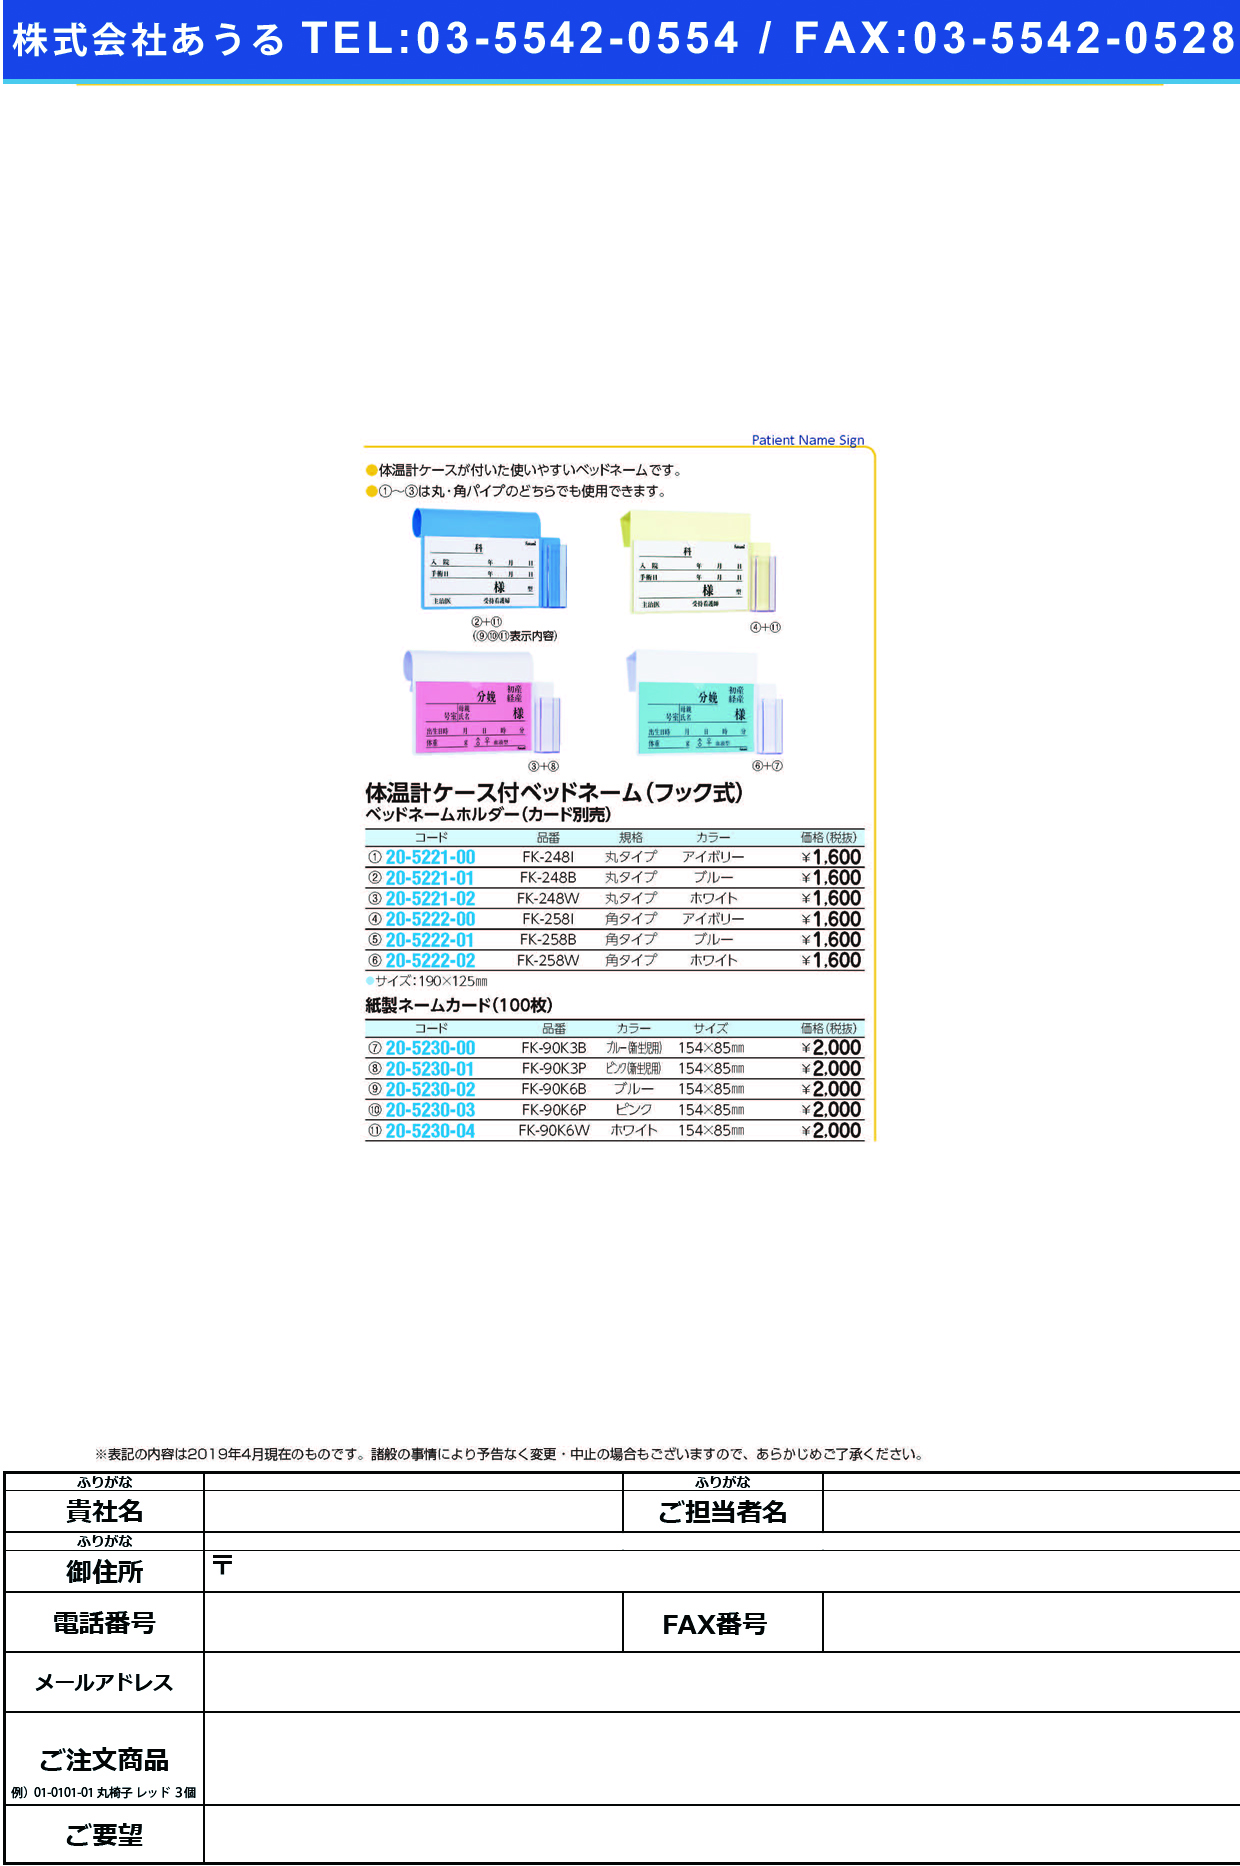 (20-5222-00)ベッドネームホルダー（体温計ケース付 FK-258I(ﾌｯｸｼｷ) ﾍﾞｯﾄﾞﾈｰﾑﾎﾙﾀﾞｰ【1個単位】【2019年カタログ商品】